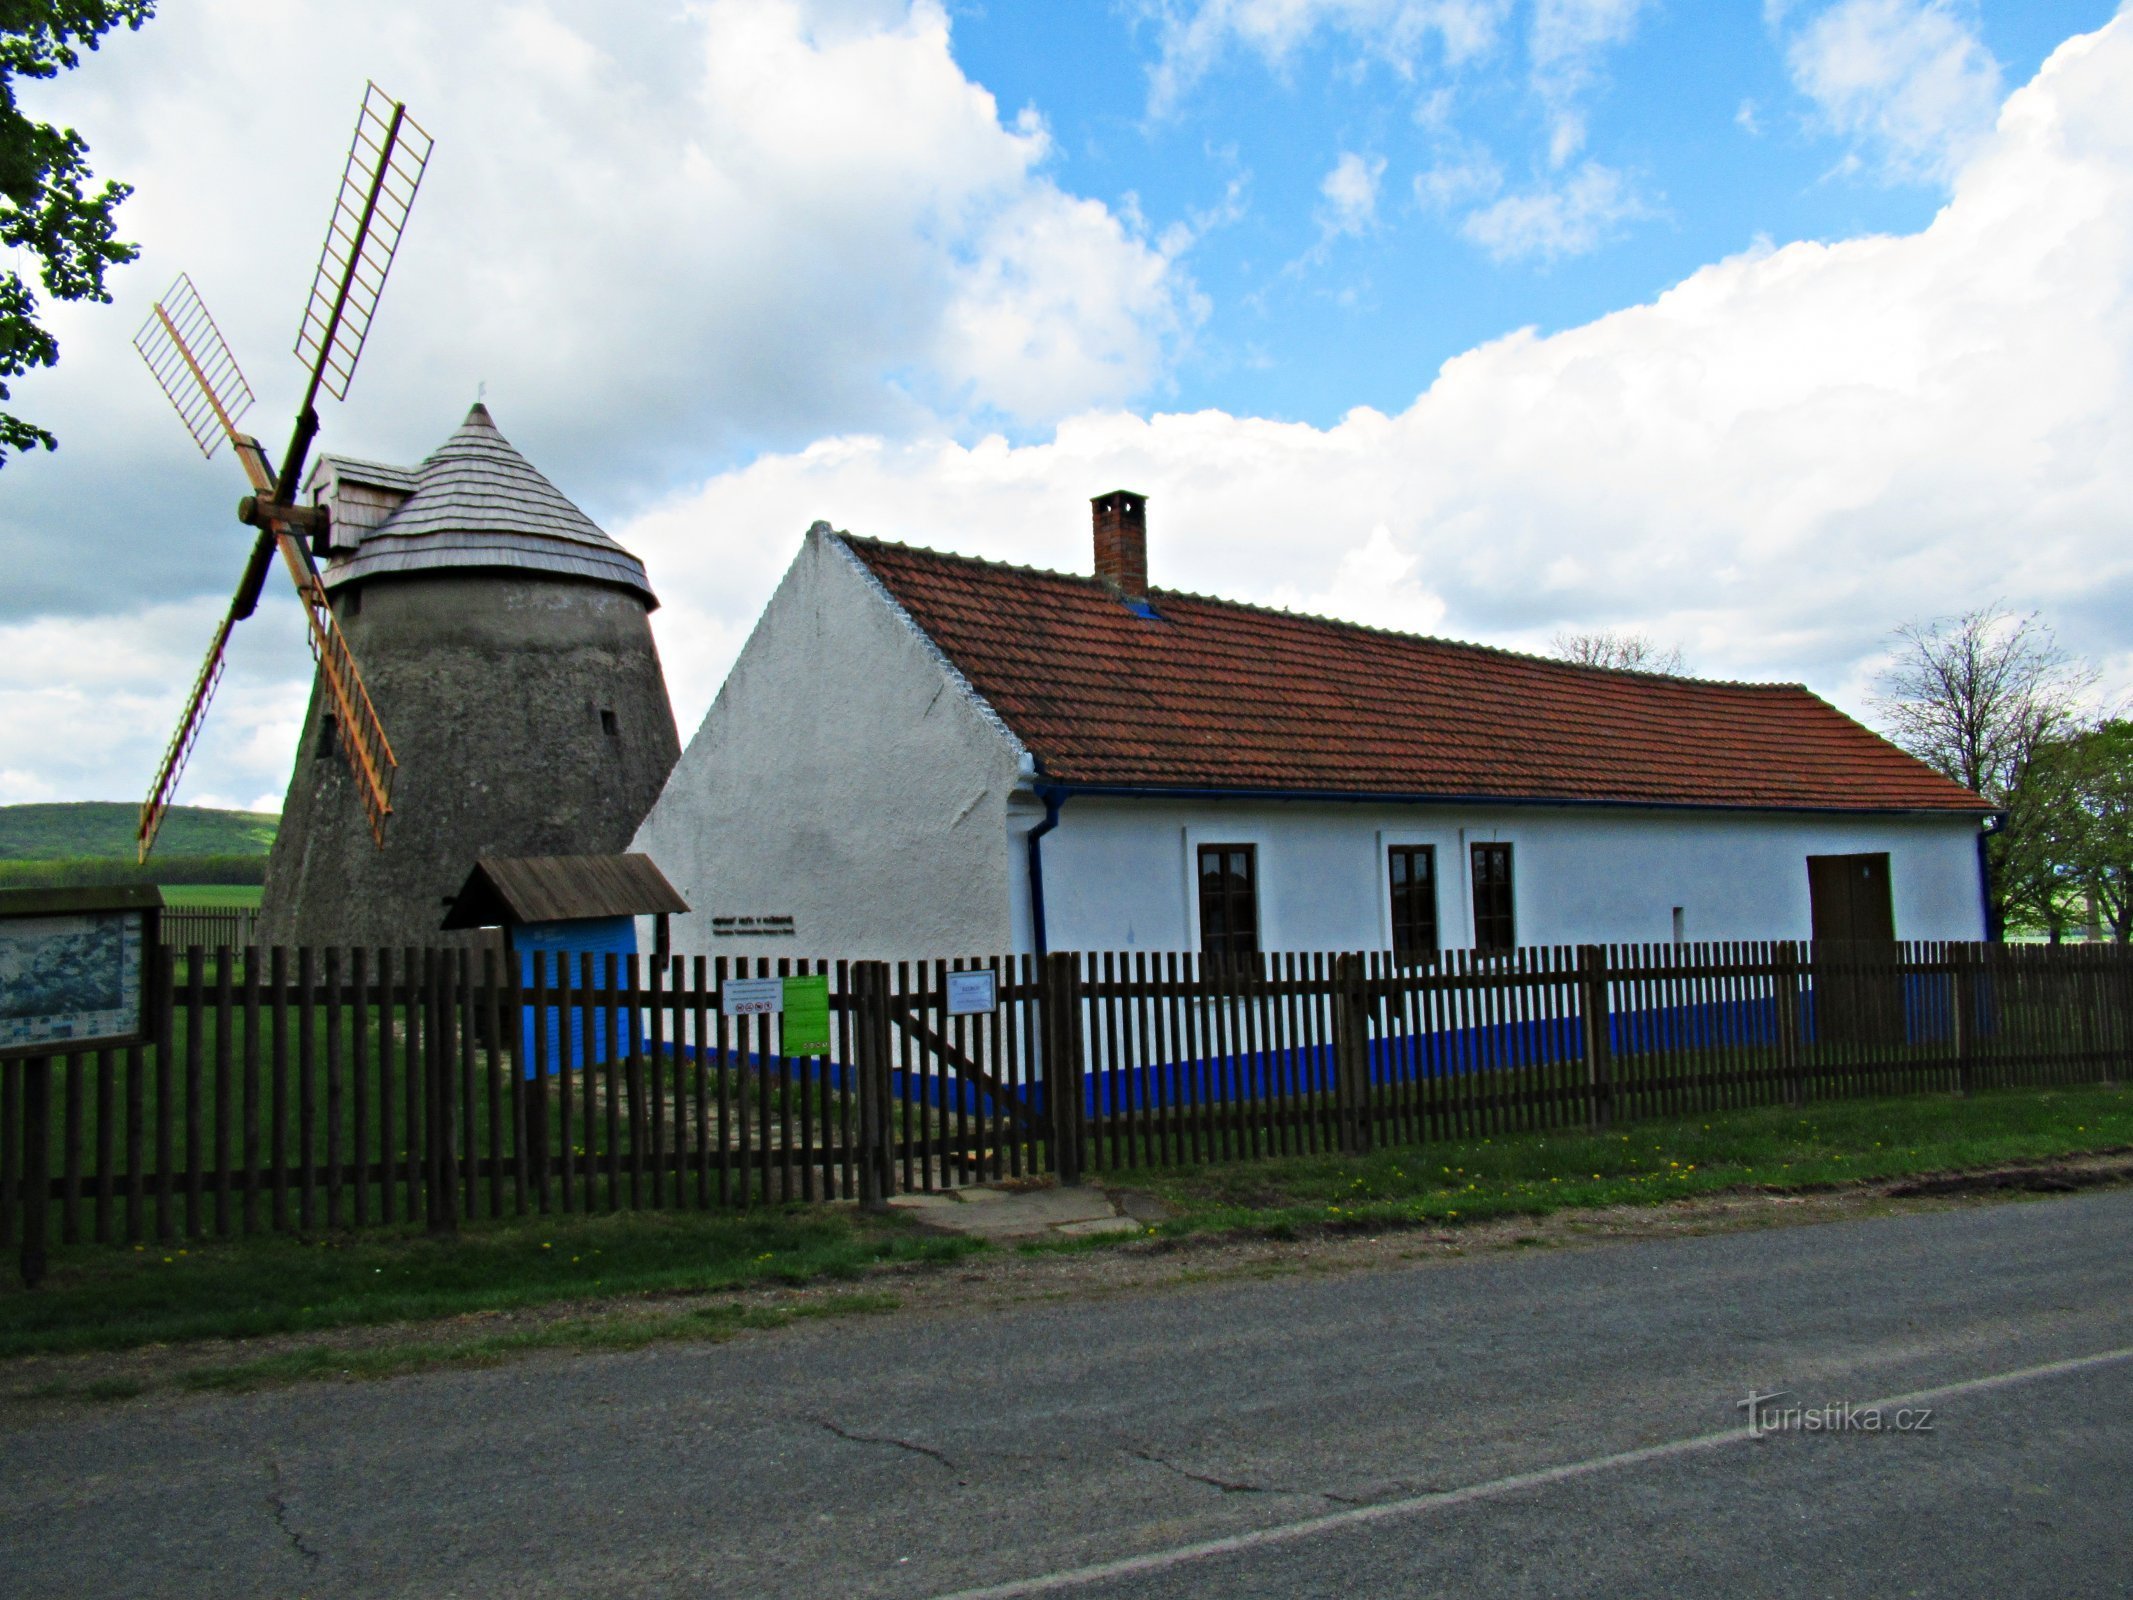 L'area del mulino a vento sopra il villaggio di Kuželov in Slovácko